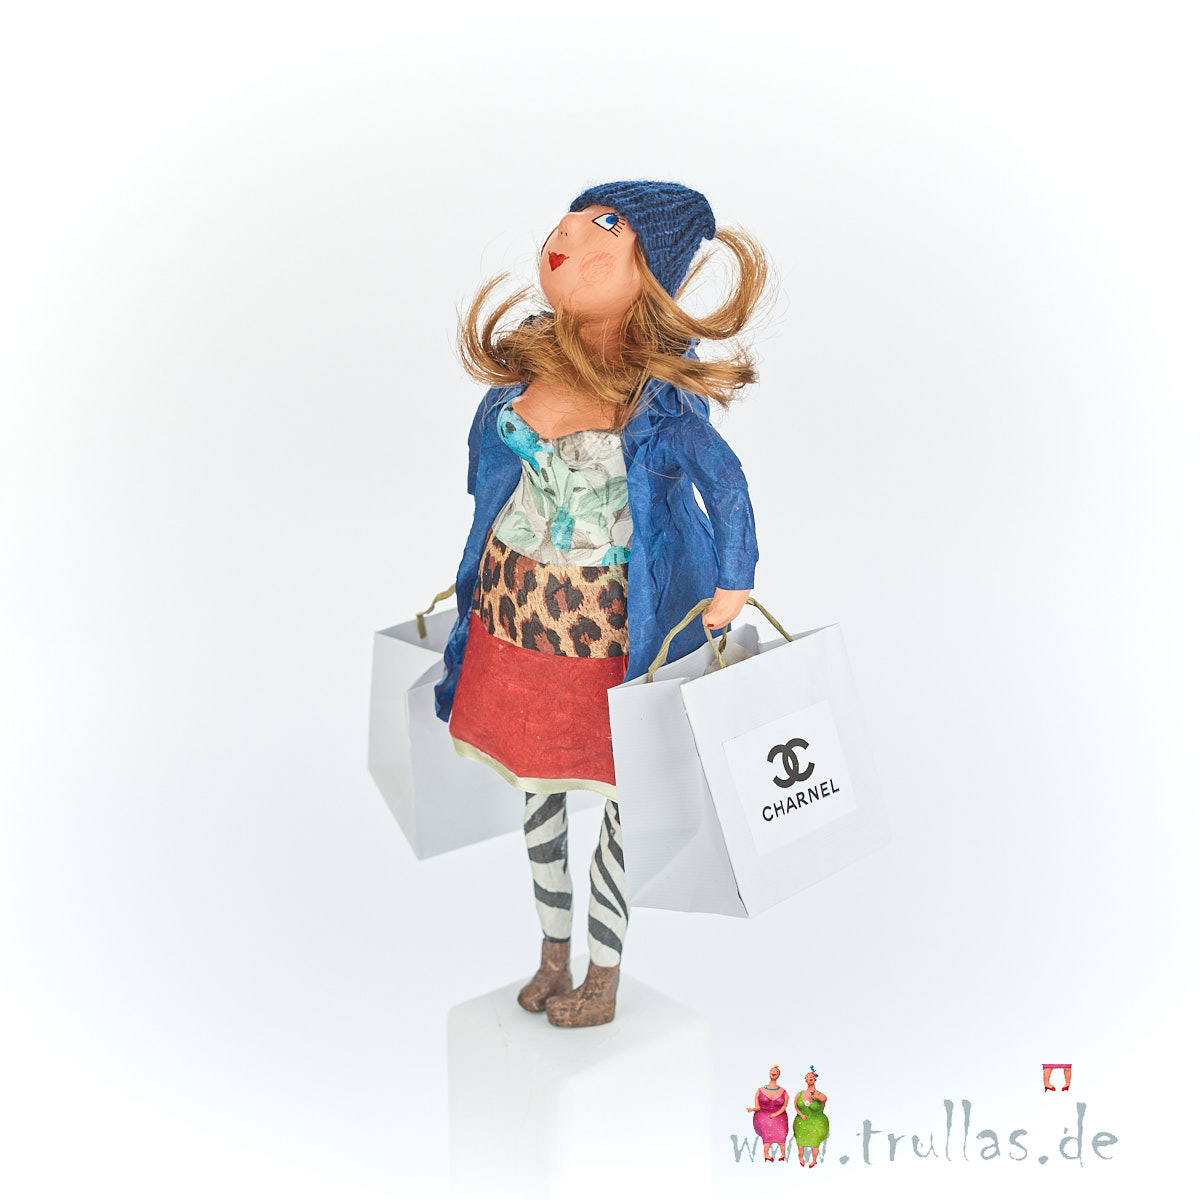 Shopping-Trulla - Katy ist eine handgefertigte Figur aus Pappmachee. Trullas sind Geschenkideen fur Menschen die handgemachte Kunst schätzen.